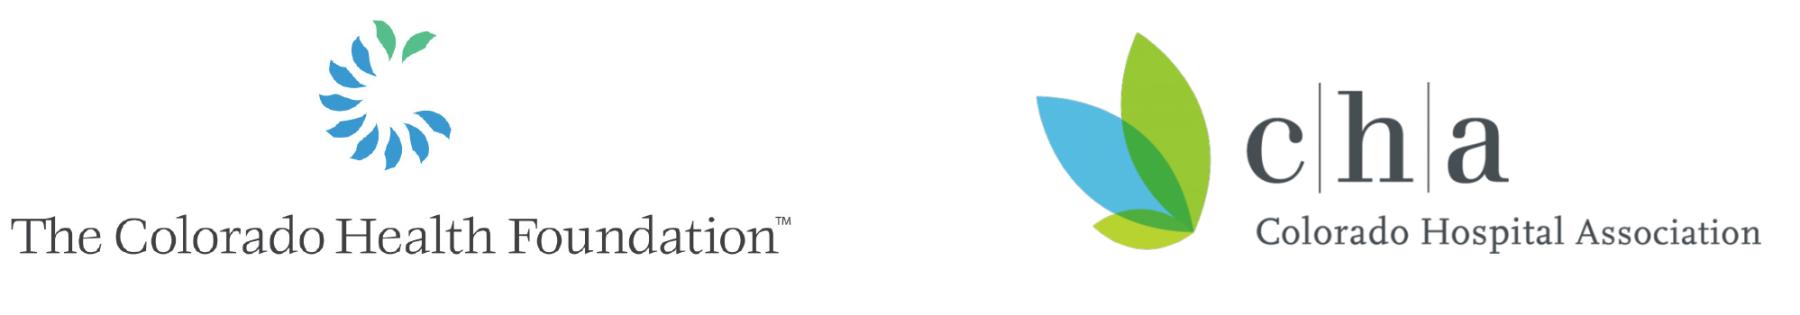 The Colorado Health Foundation and Colorado Hospital Association logos